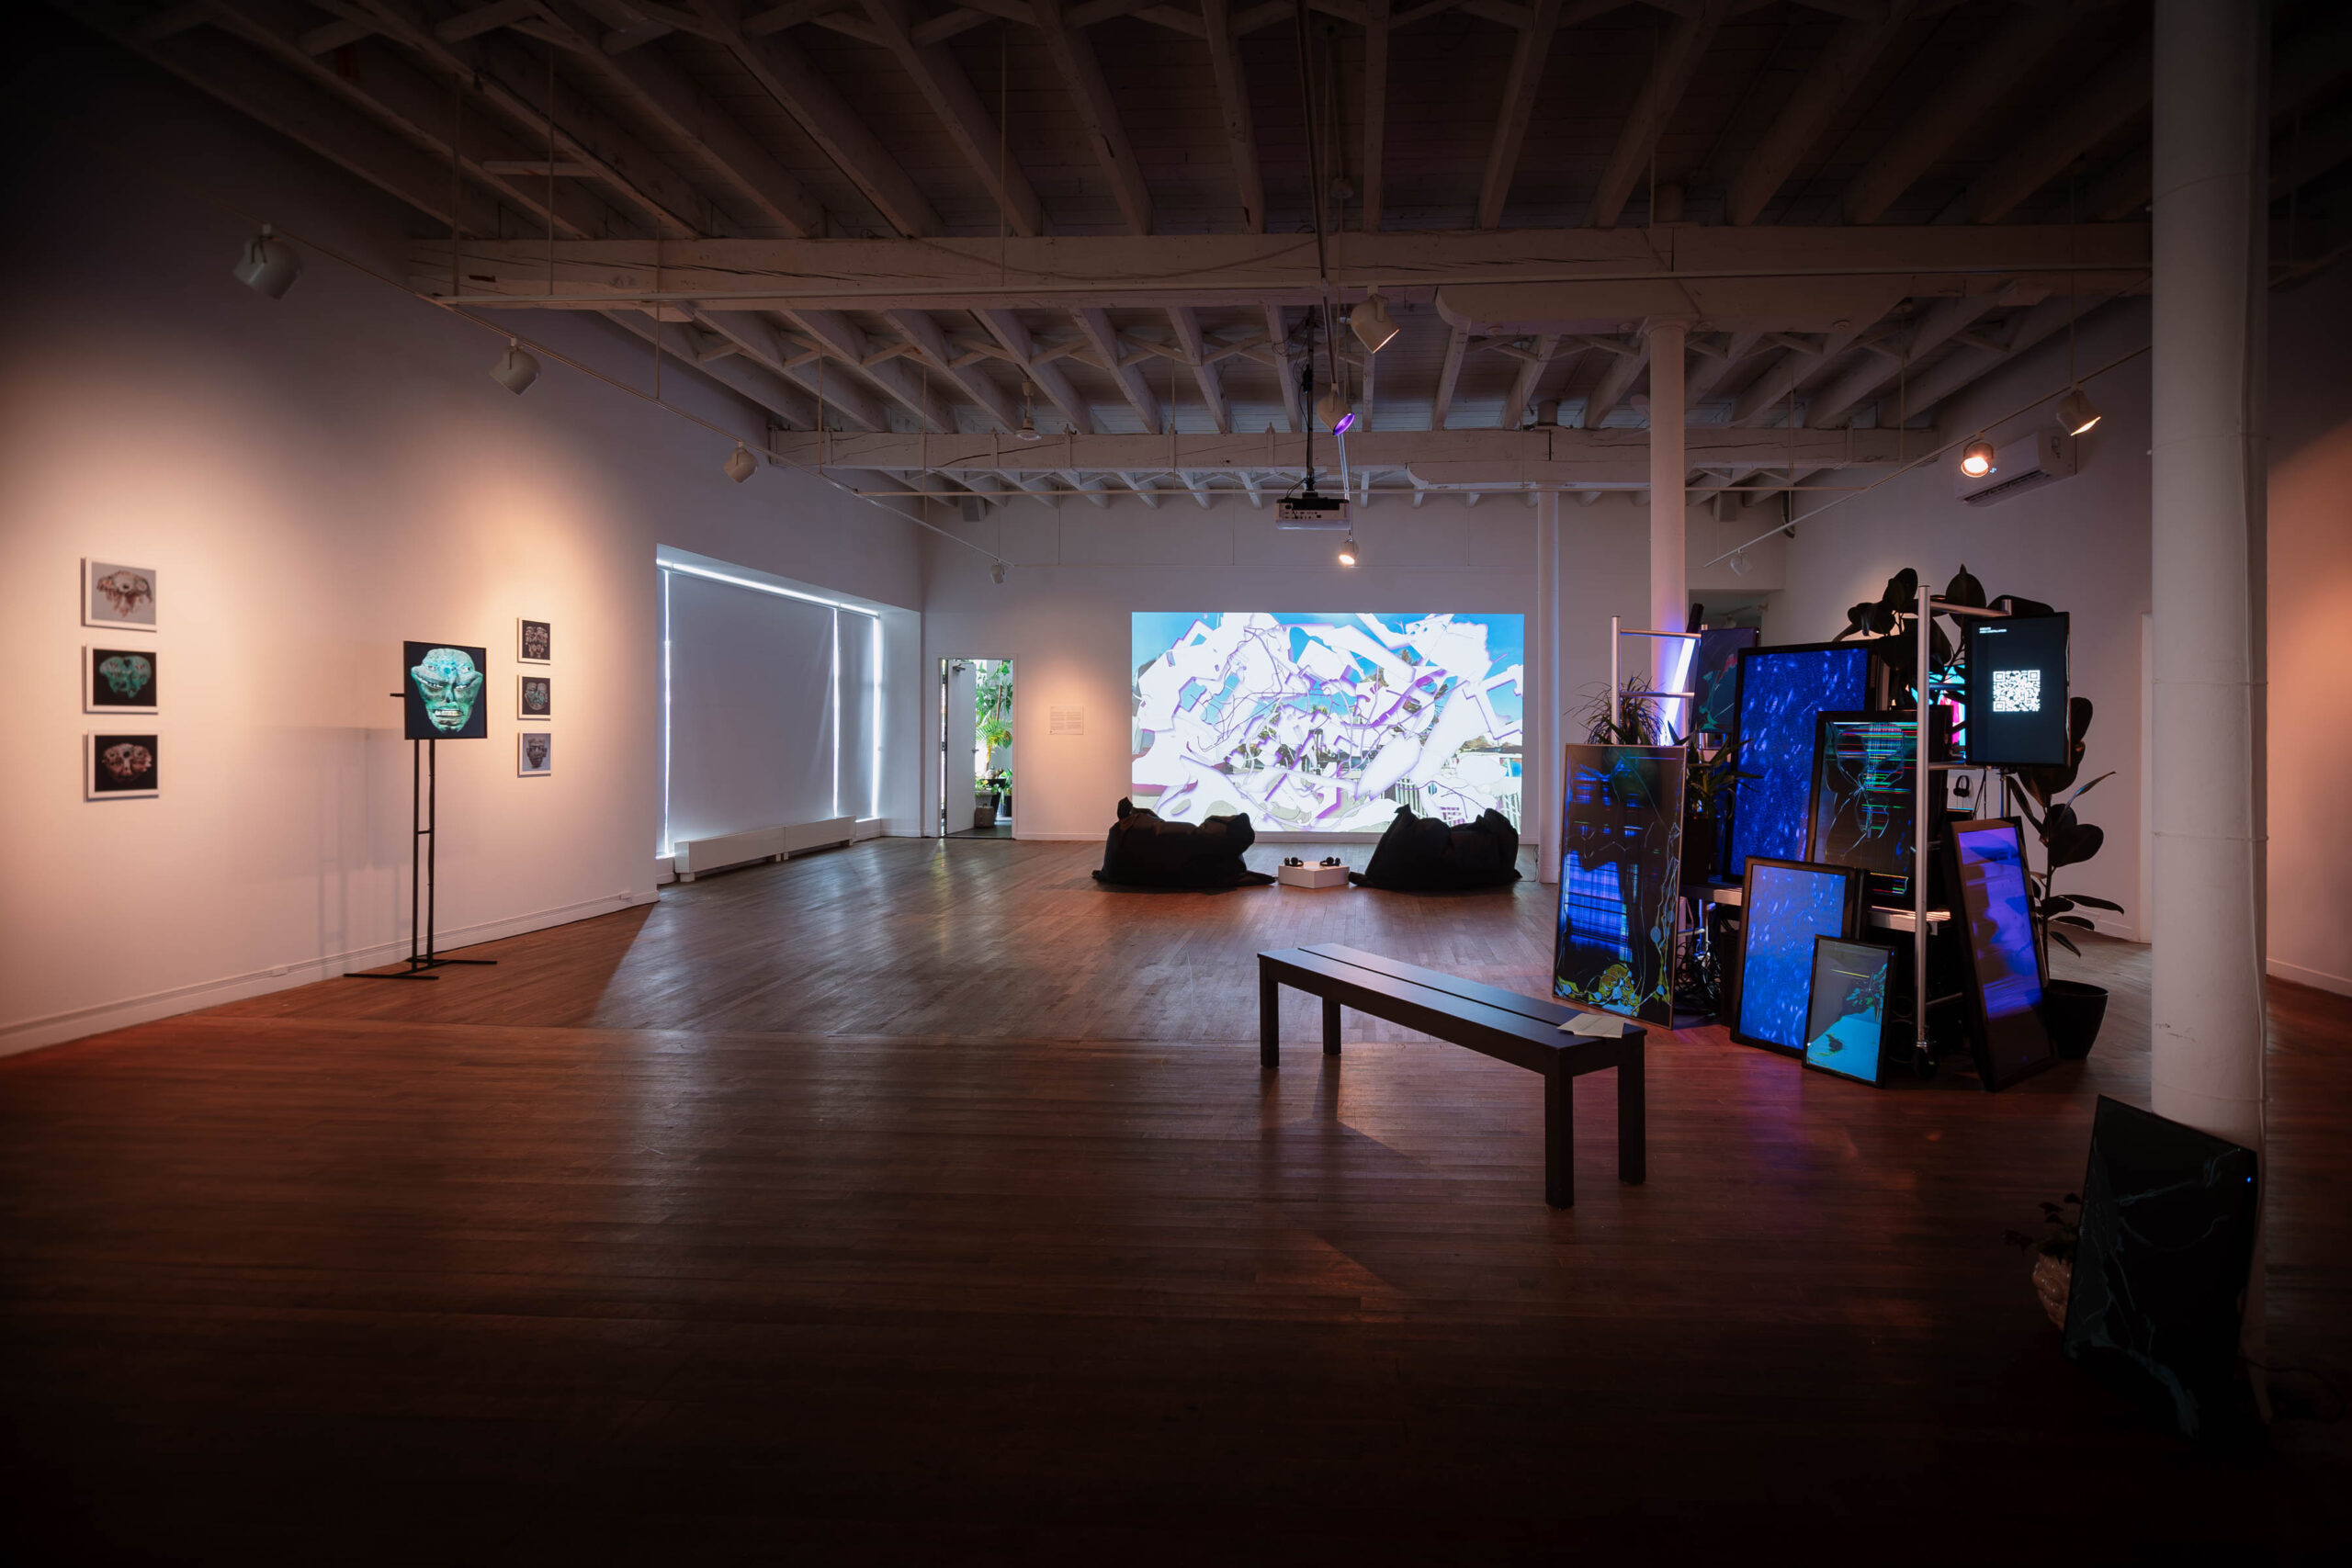 Vue d'exposition, oeuvre interactive du collectif CiÖ, projection vidéo du Lucas LaRochelle et oeuvre installative d'Isabella Salas